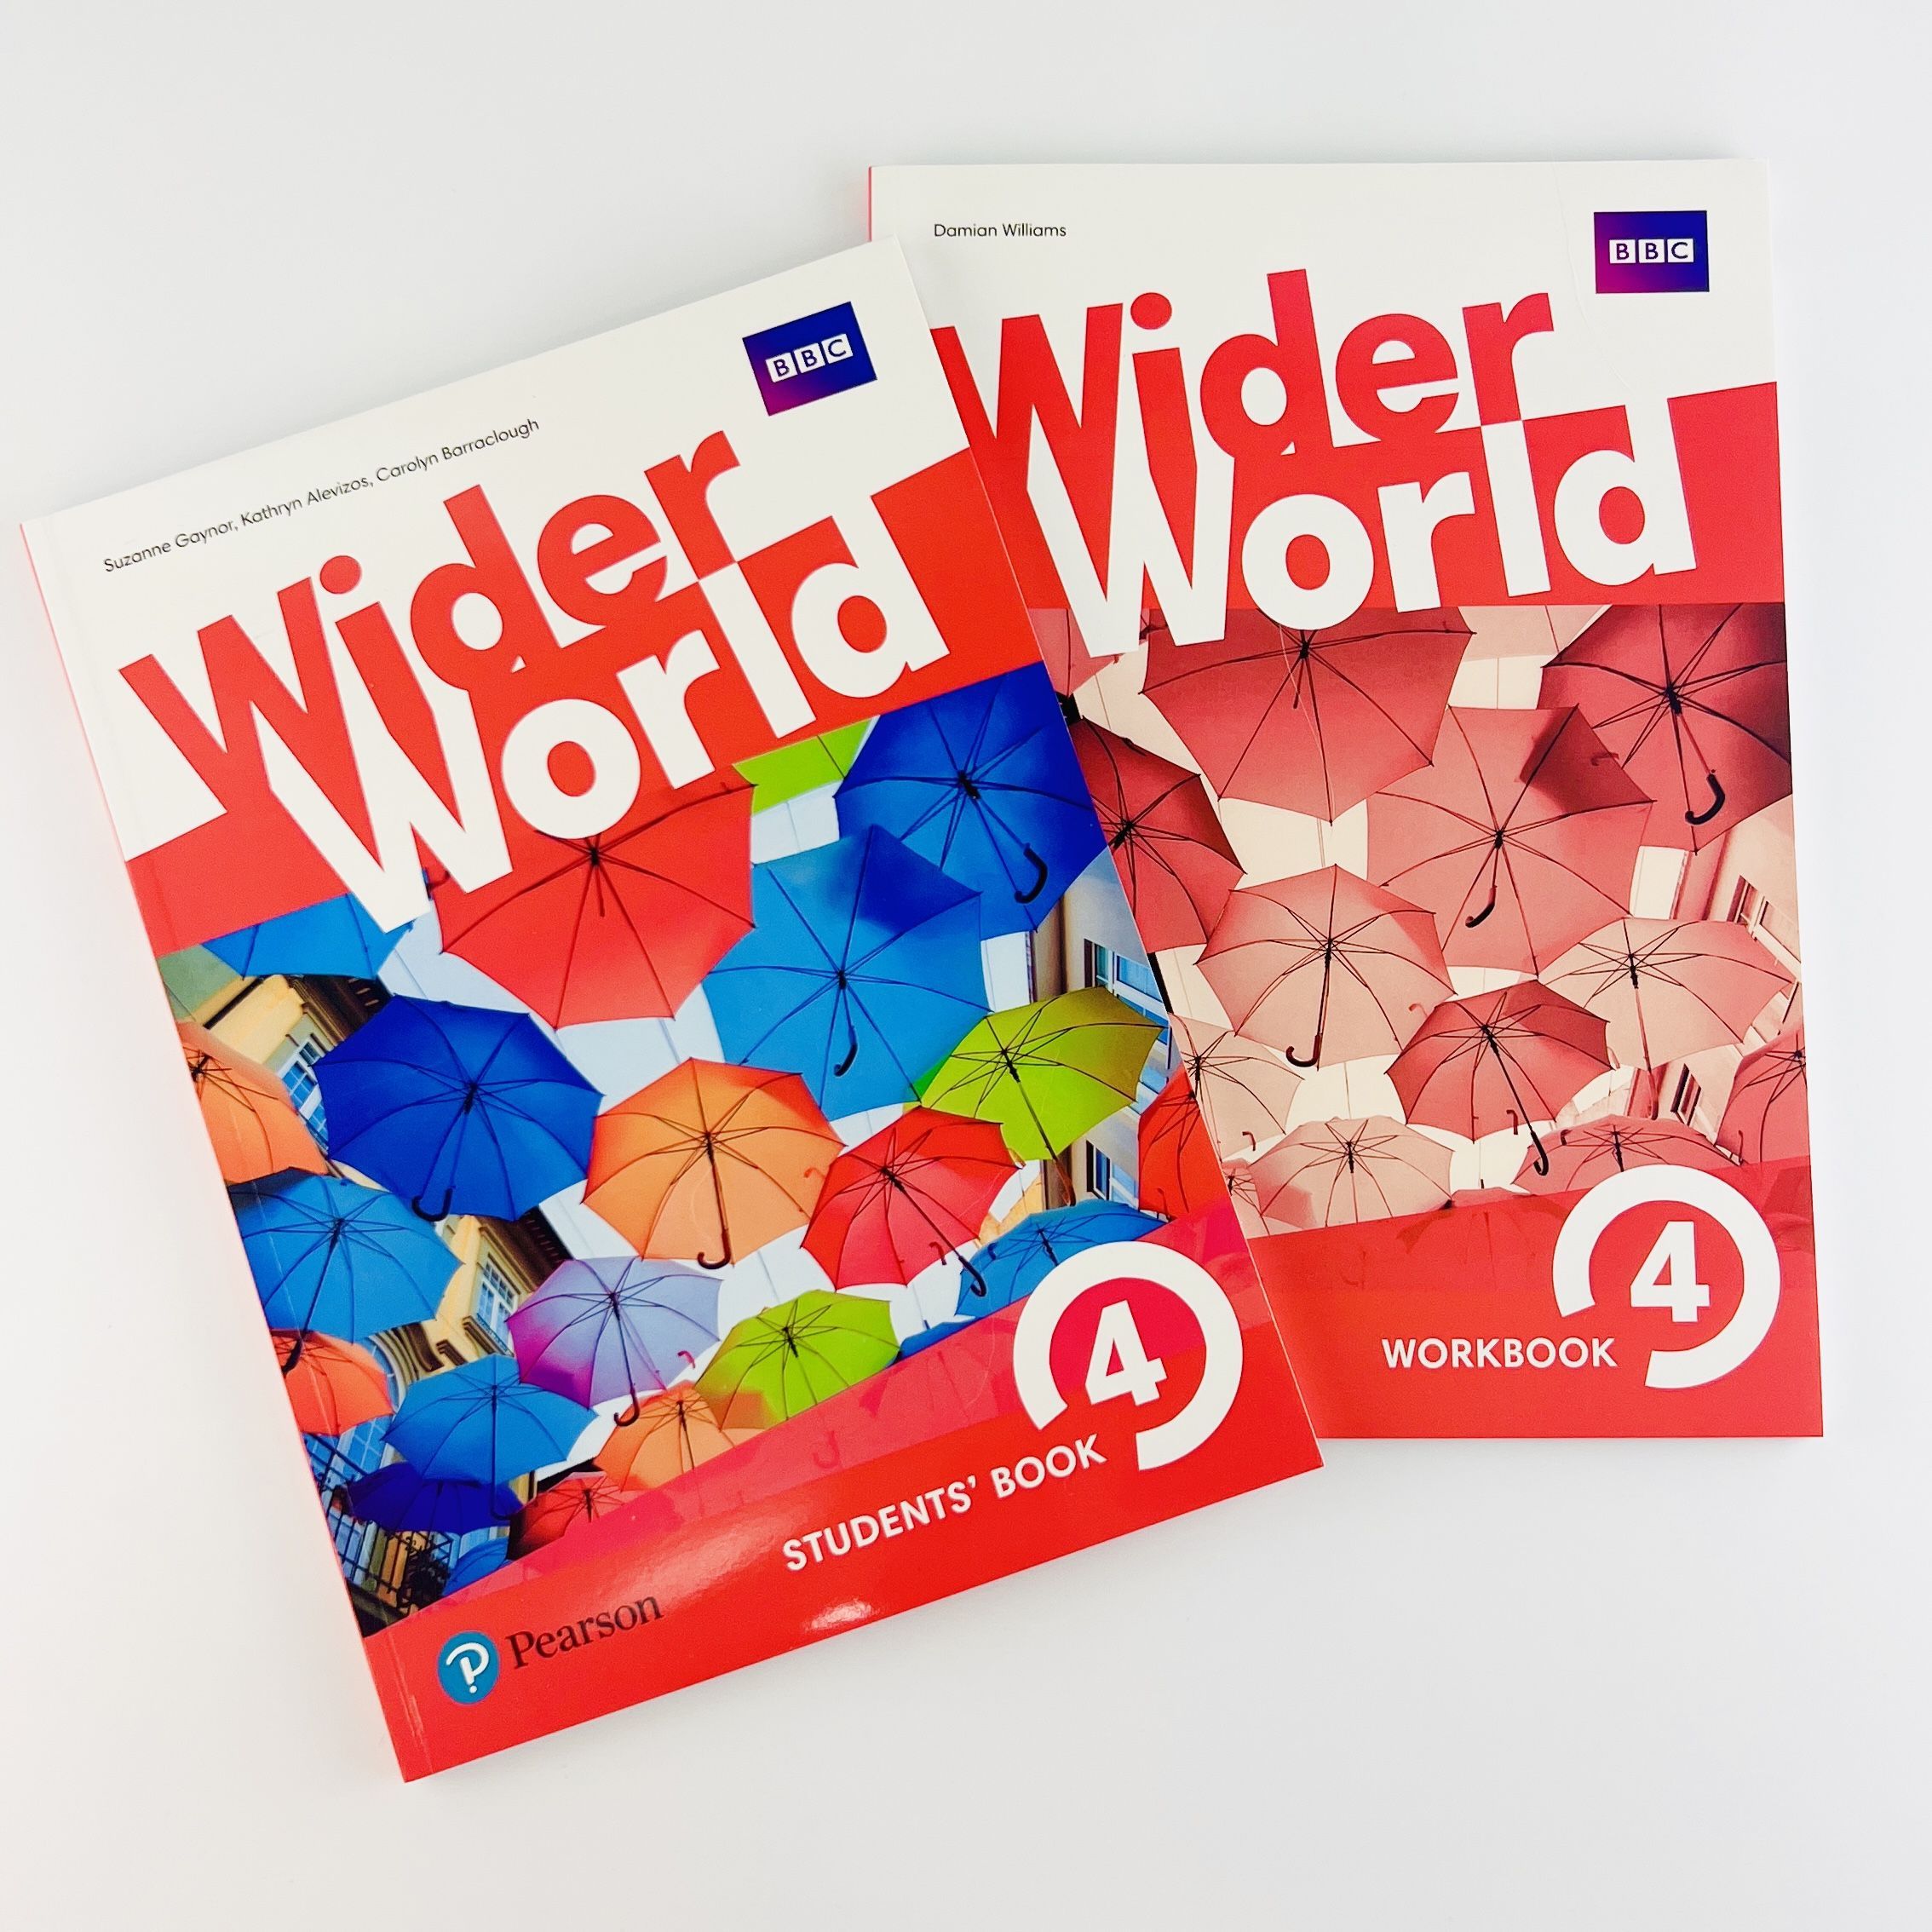 Учебник wider World 4. Workbook евро учебник. Wider World 4 Workbook. Учебник студент бук.